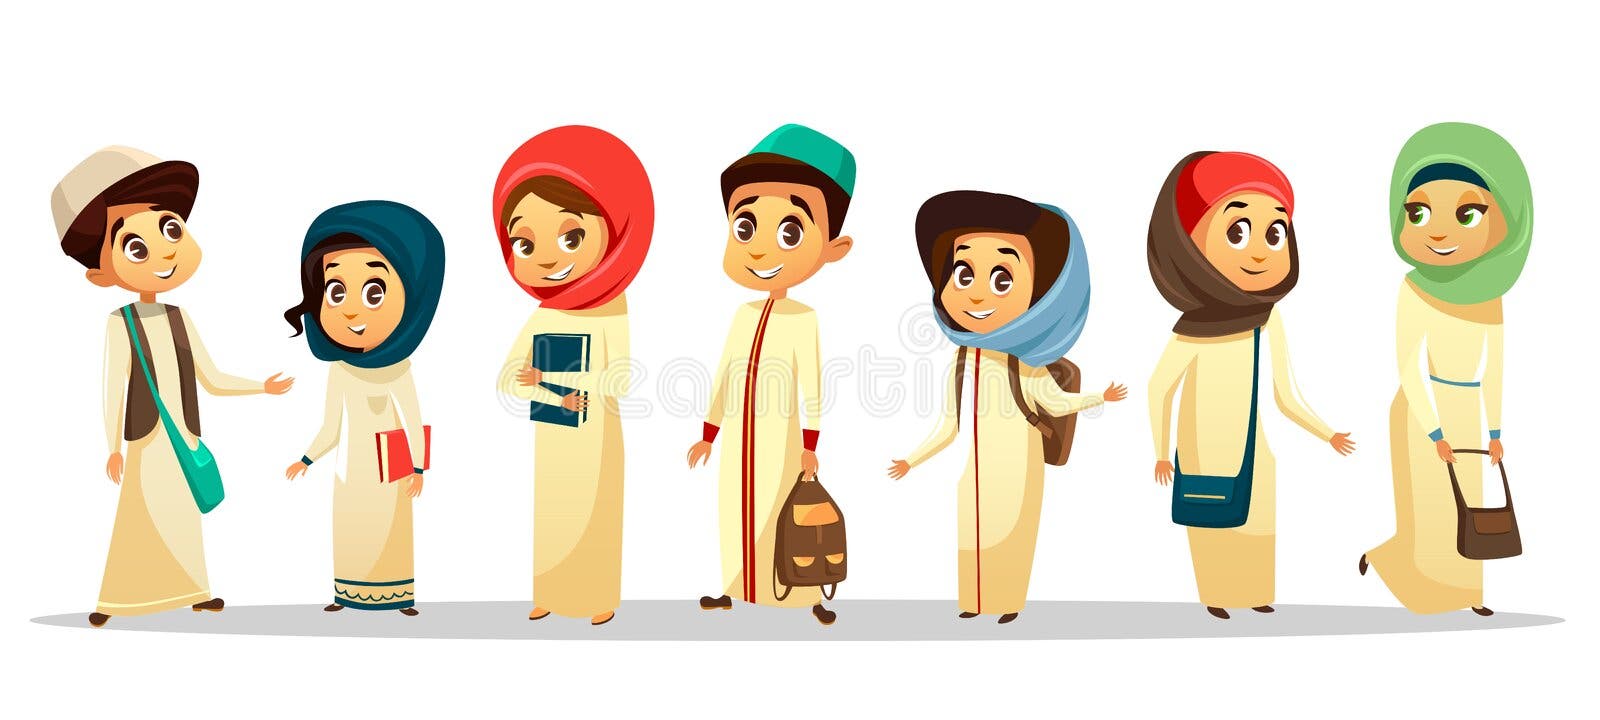 Hijab cartoon photoshop  Hijab cartoon, Girl cartoon characters